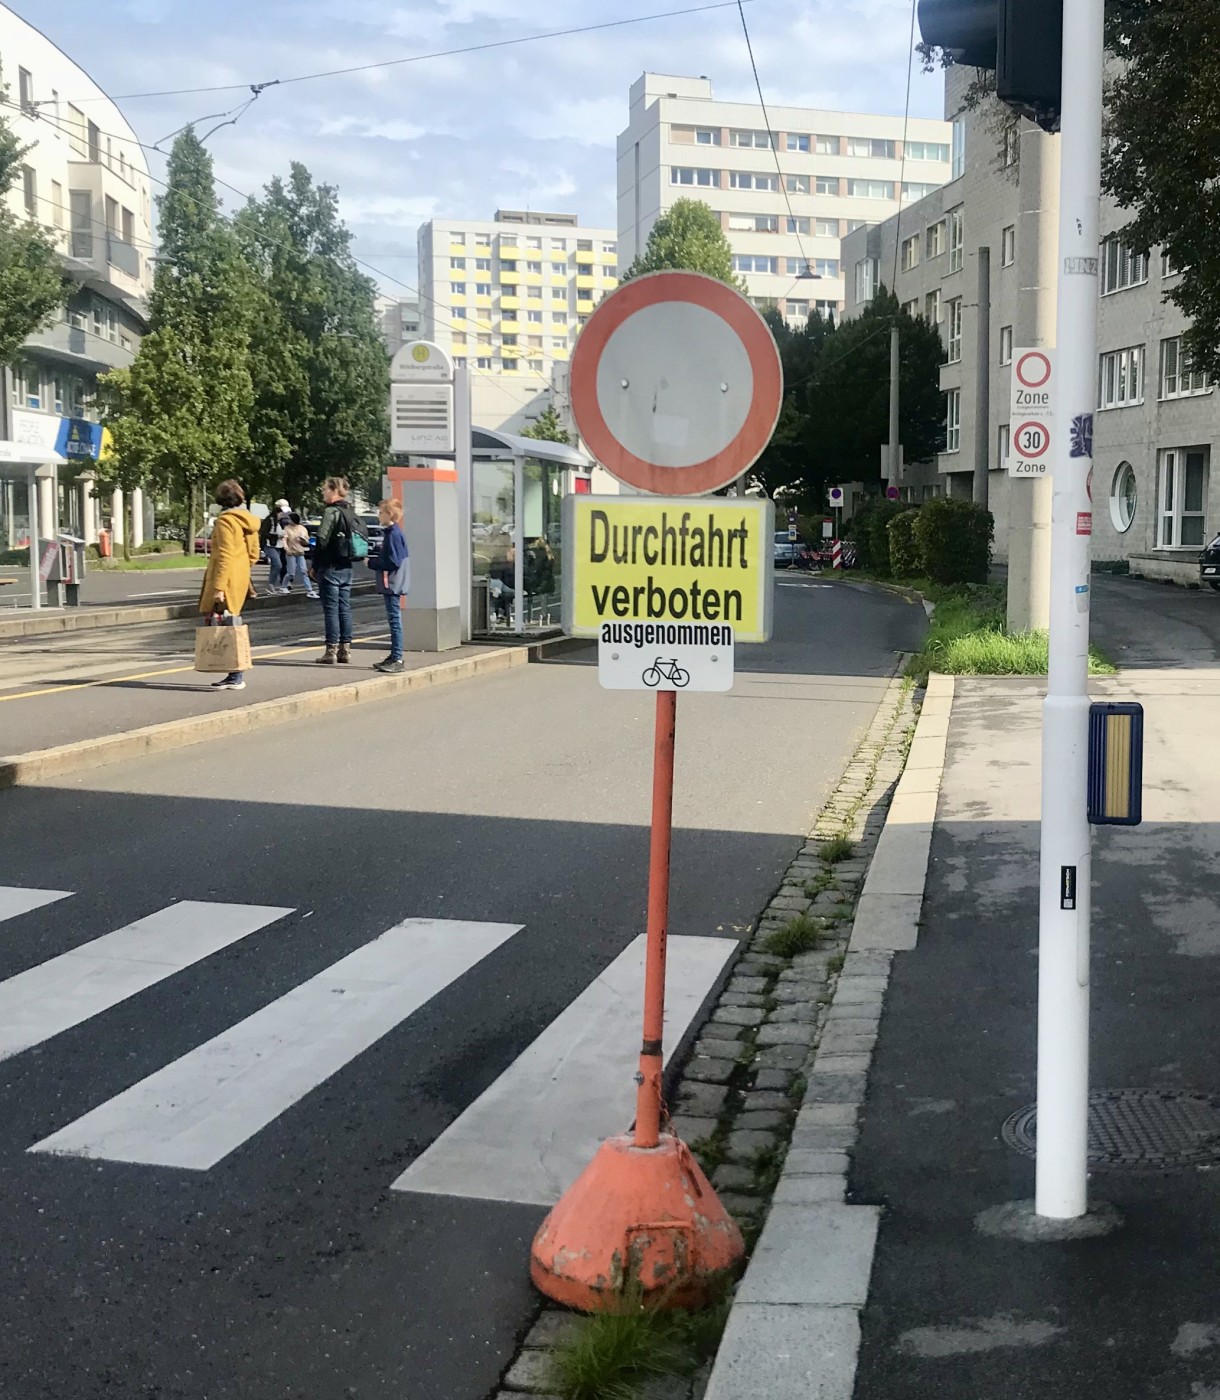 Ferihumerstraße: Aufhebung von Sperre darf kein Freibrief sein, Durchfahrtsverbot zu missachten   